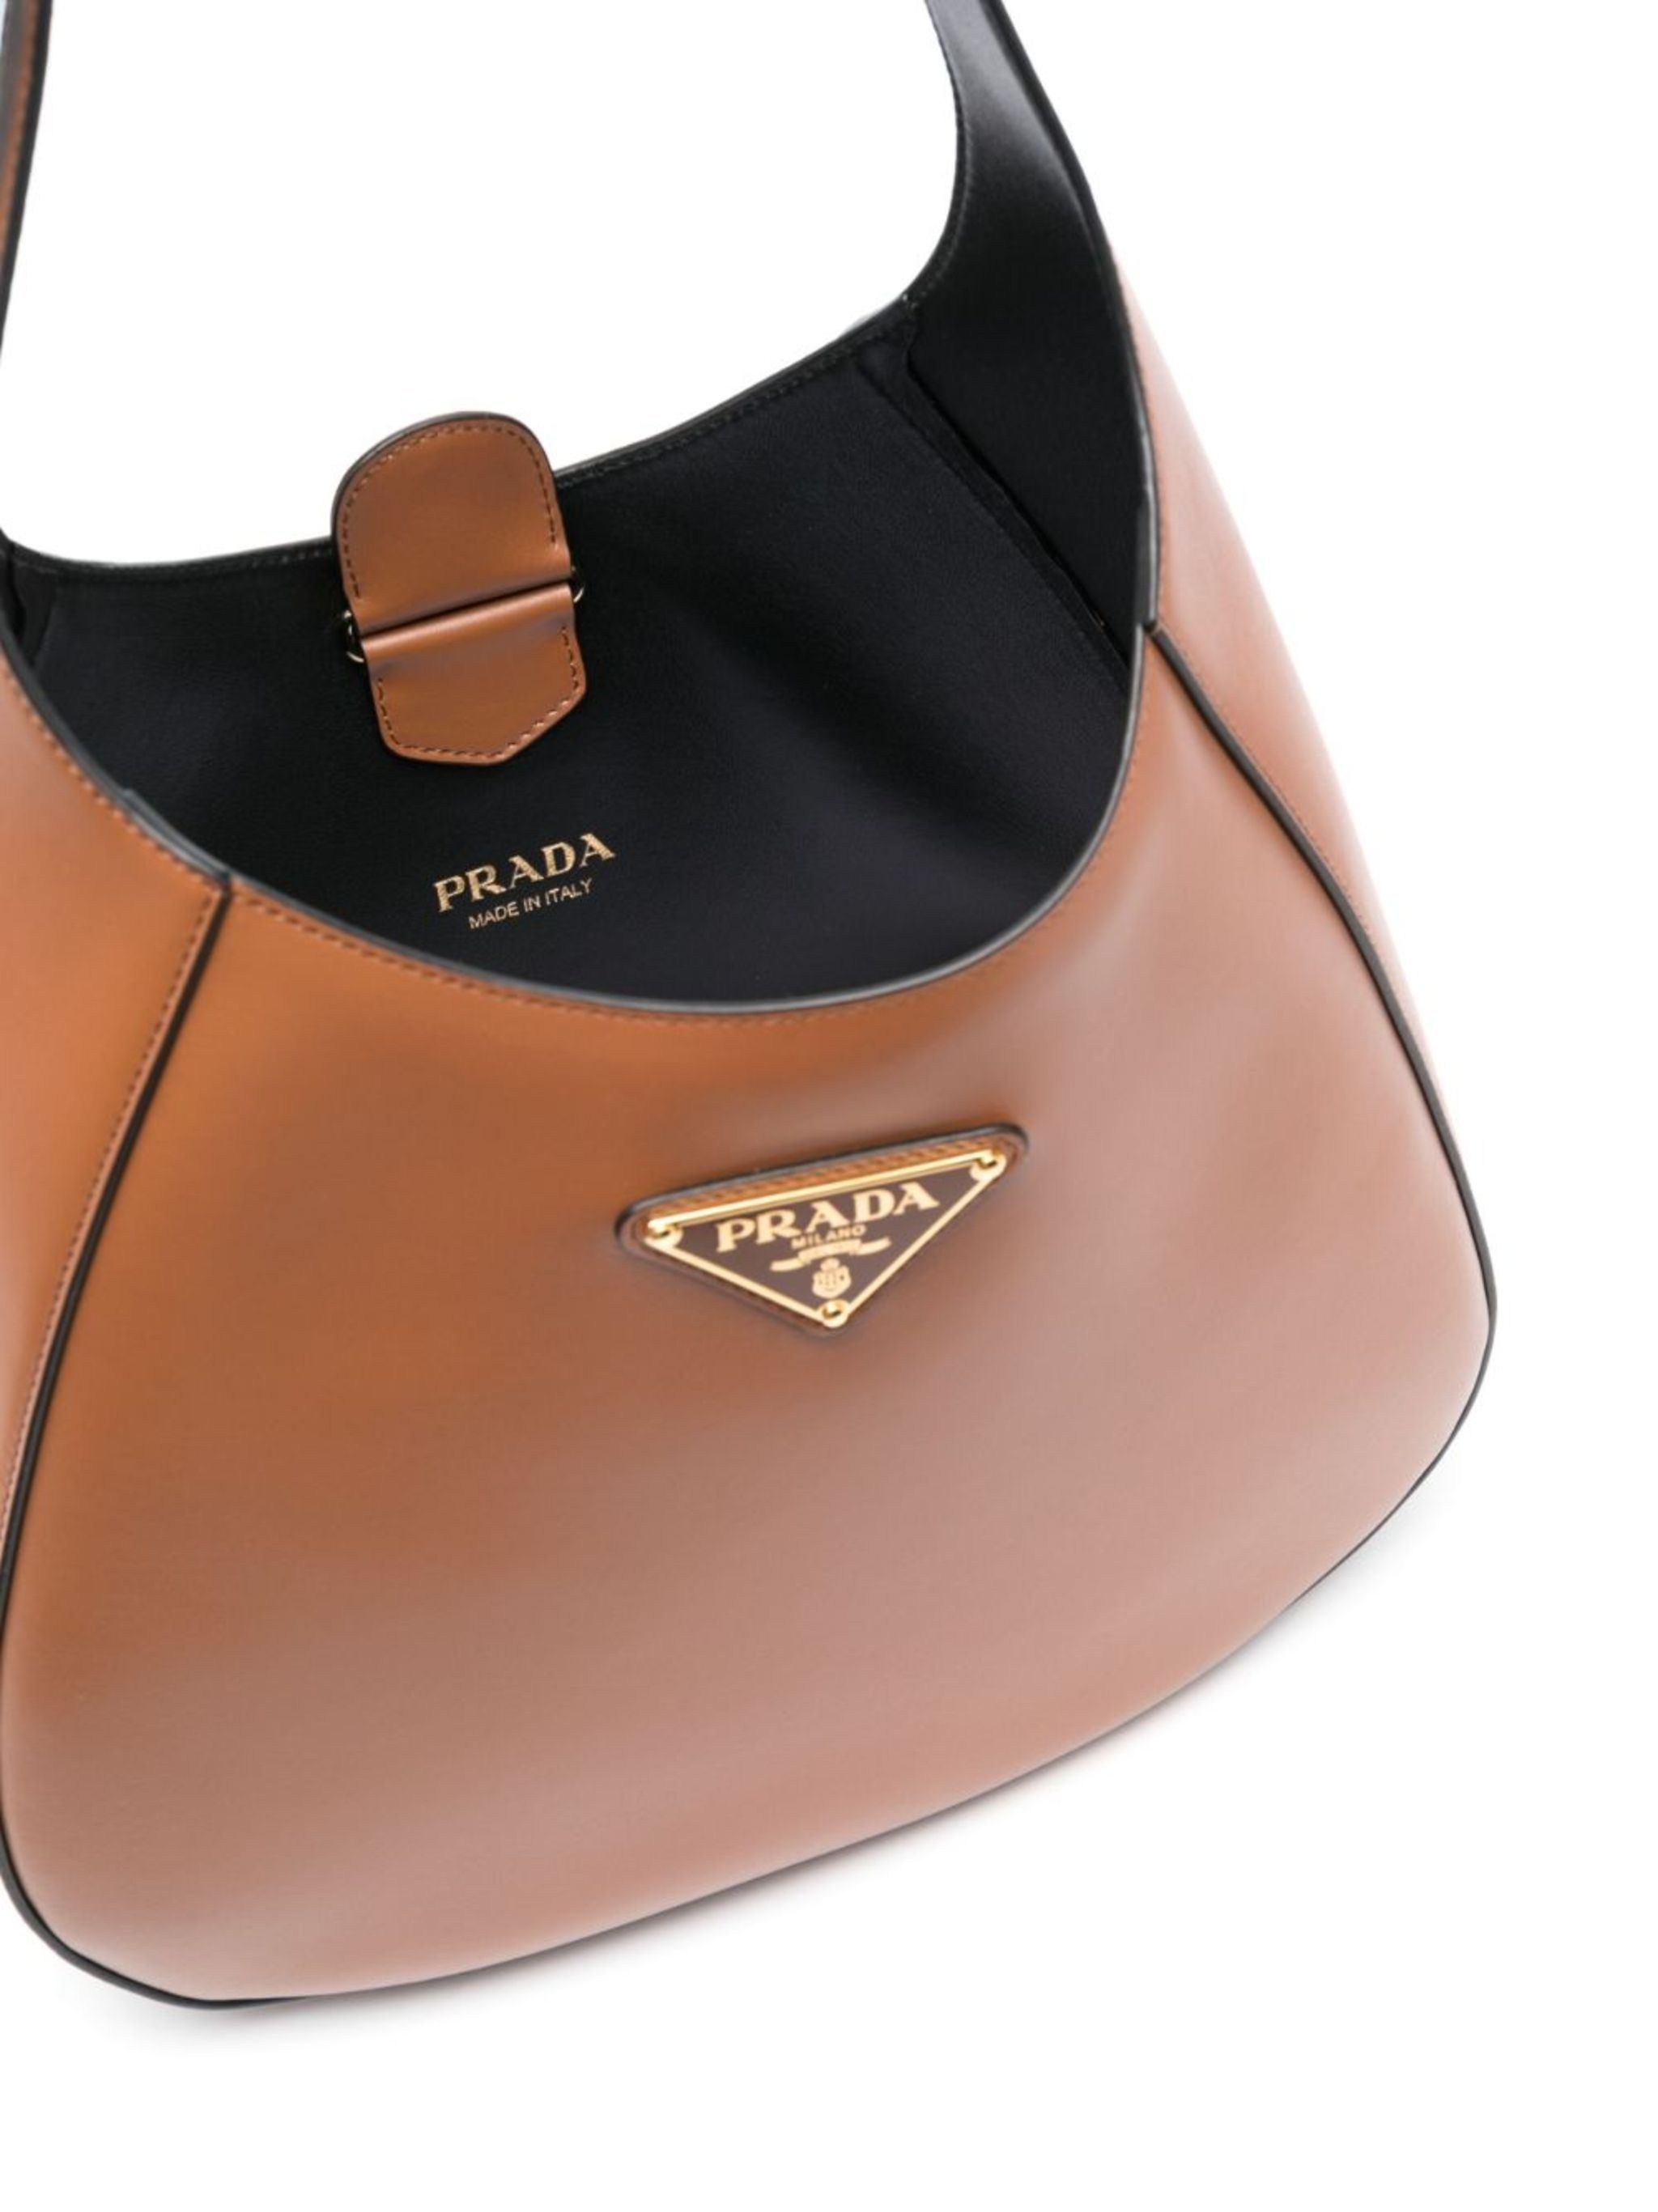 triangle-logo leather shoulder bag - 5